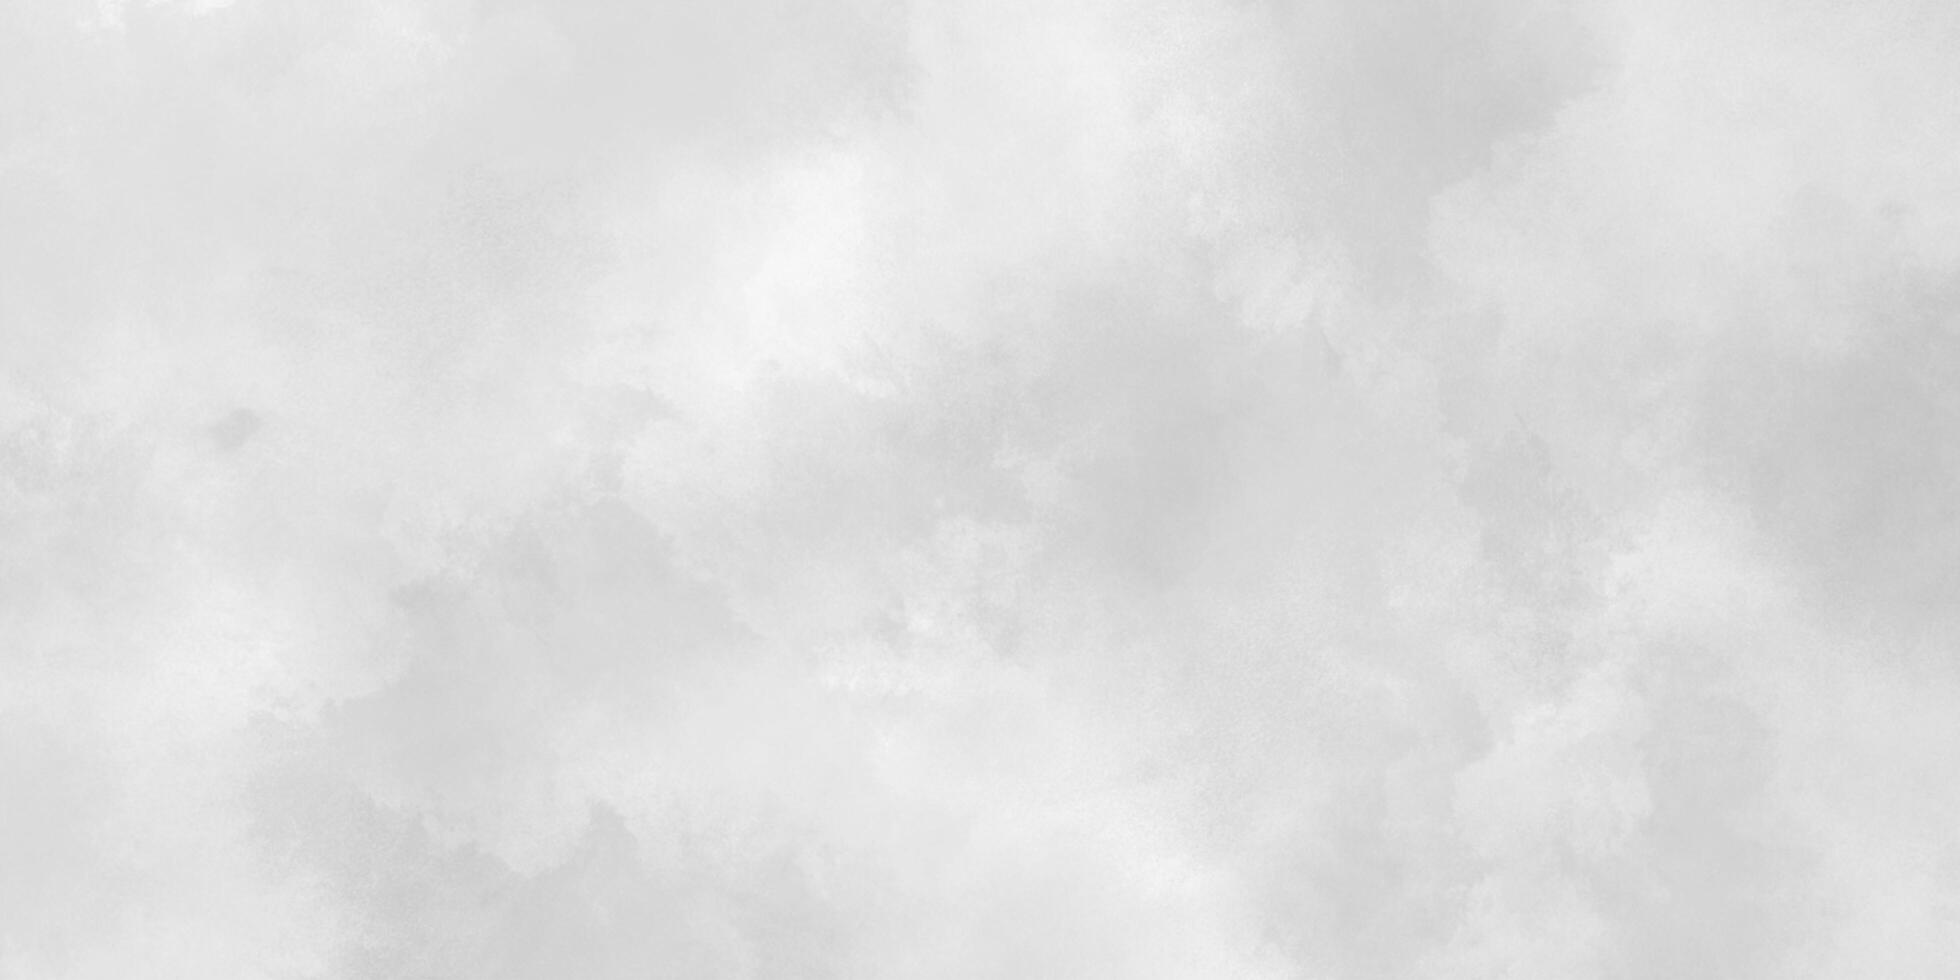 abstrakt molnig silver- bläck effekt vit papper textur, gammal och kornig vit eller grå grunge textur, svart och vitare bakgrund med pösigt rök, vit bakgrund illustration. foto